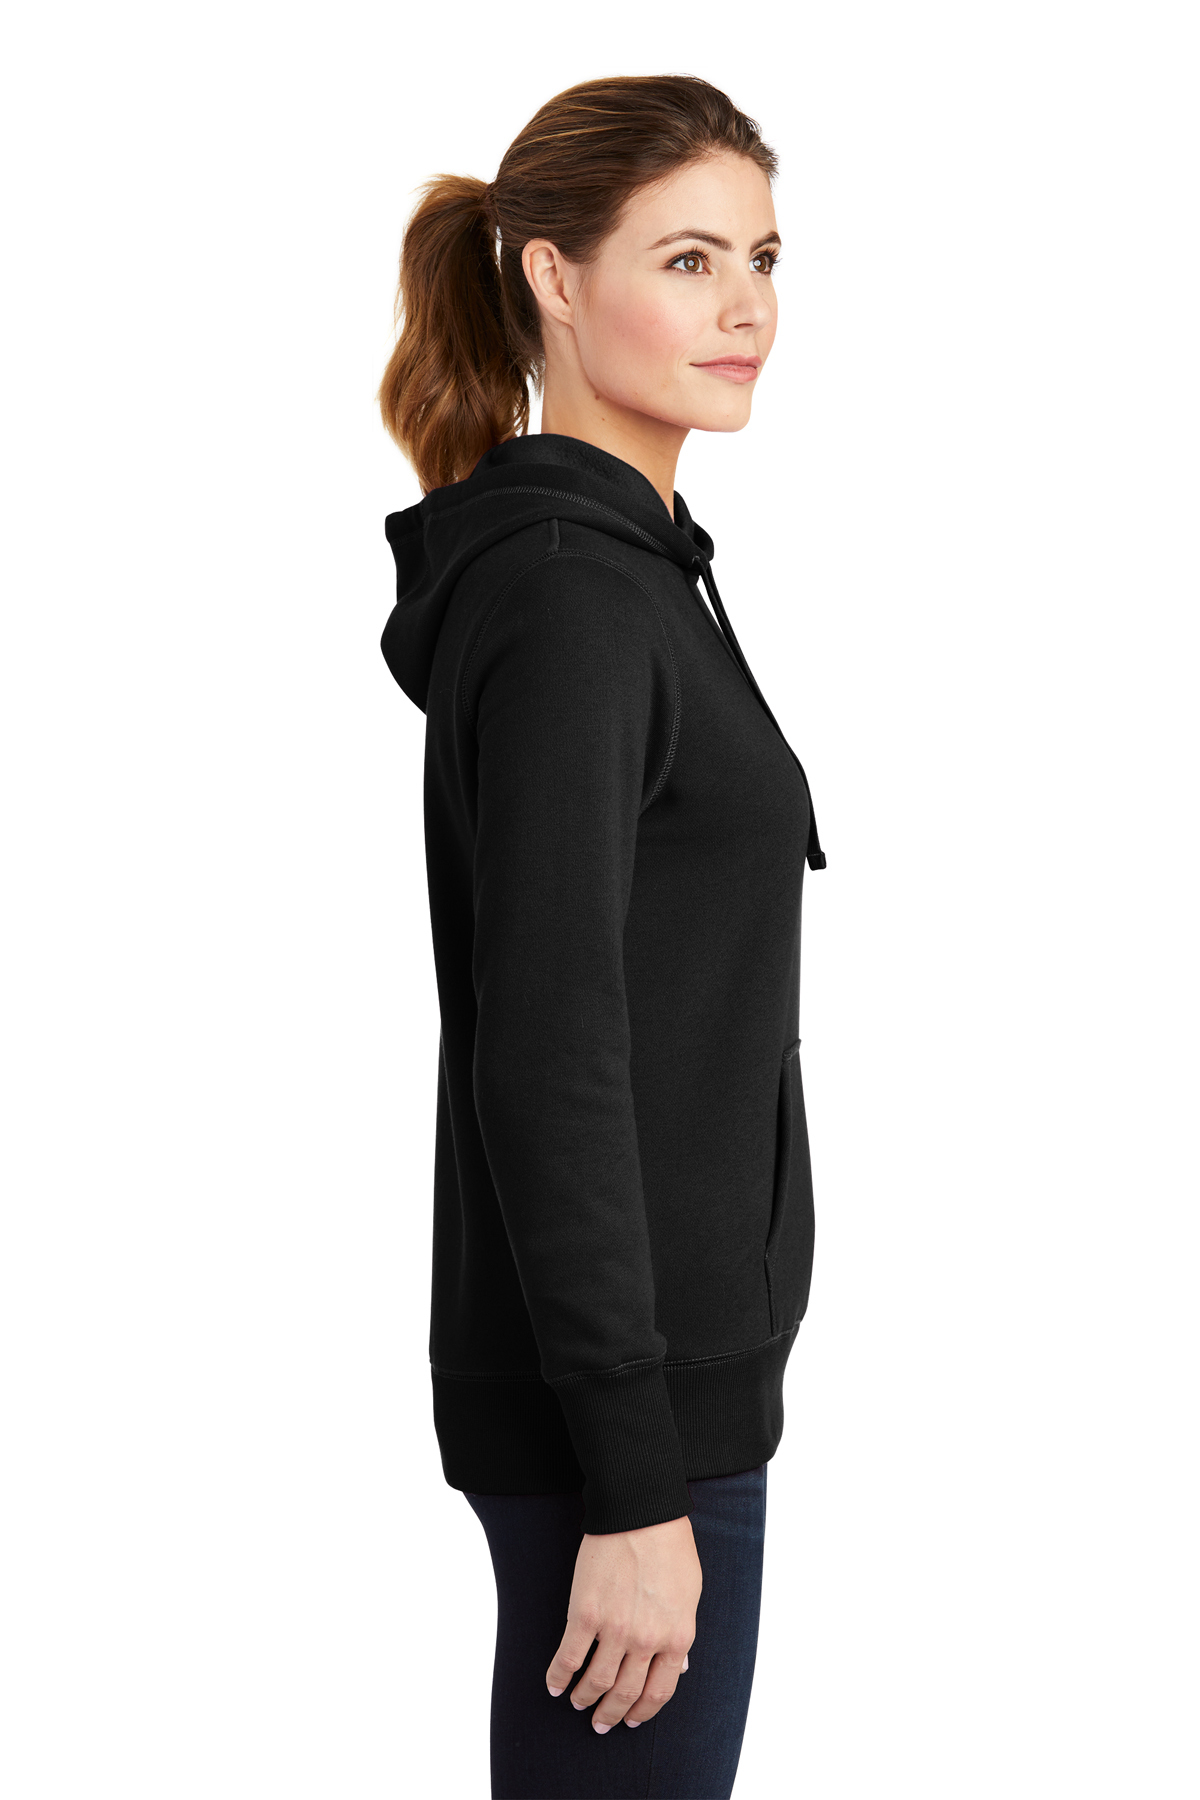 Sport-Tek Ladies Pullover Hooded Sweatshirt | Product | Sport-Tek